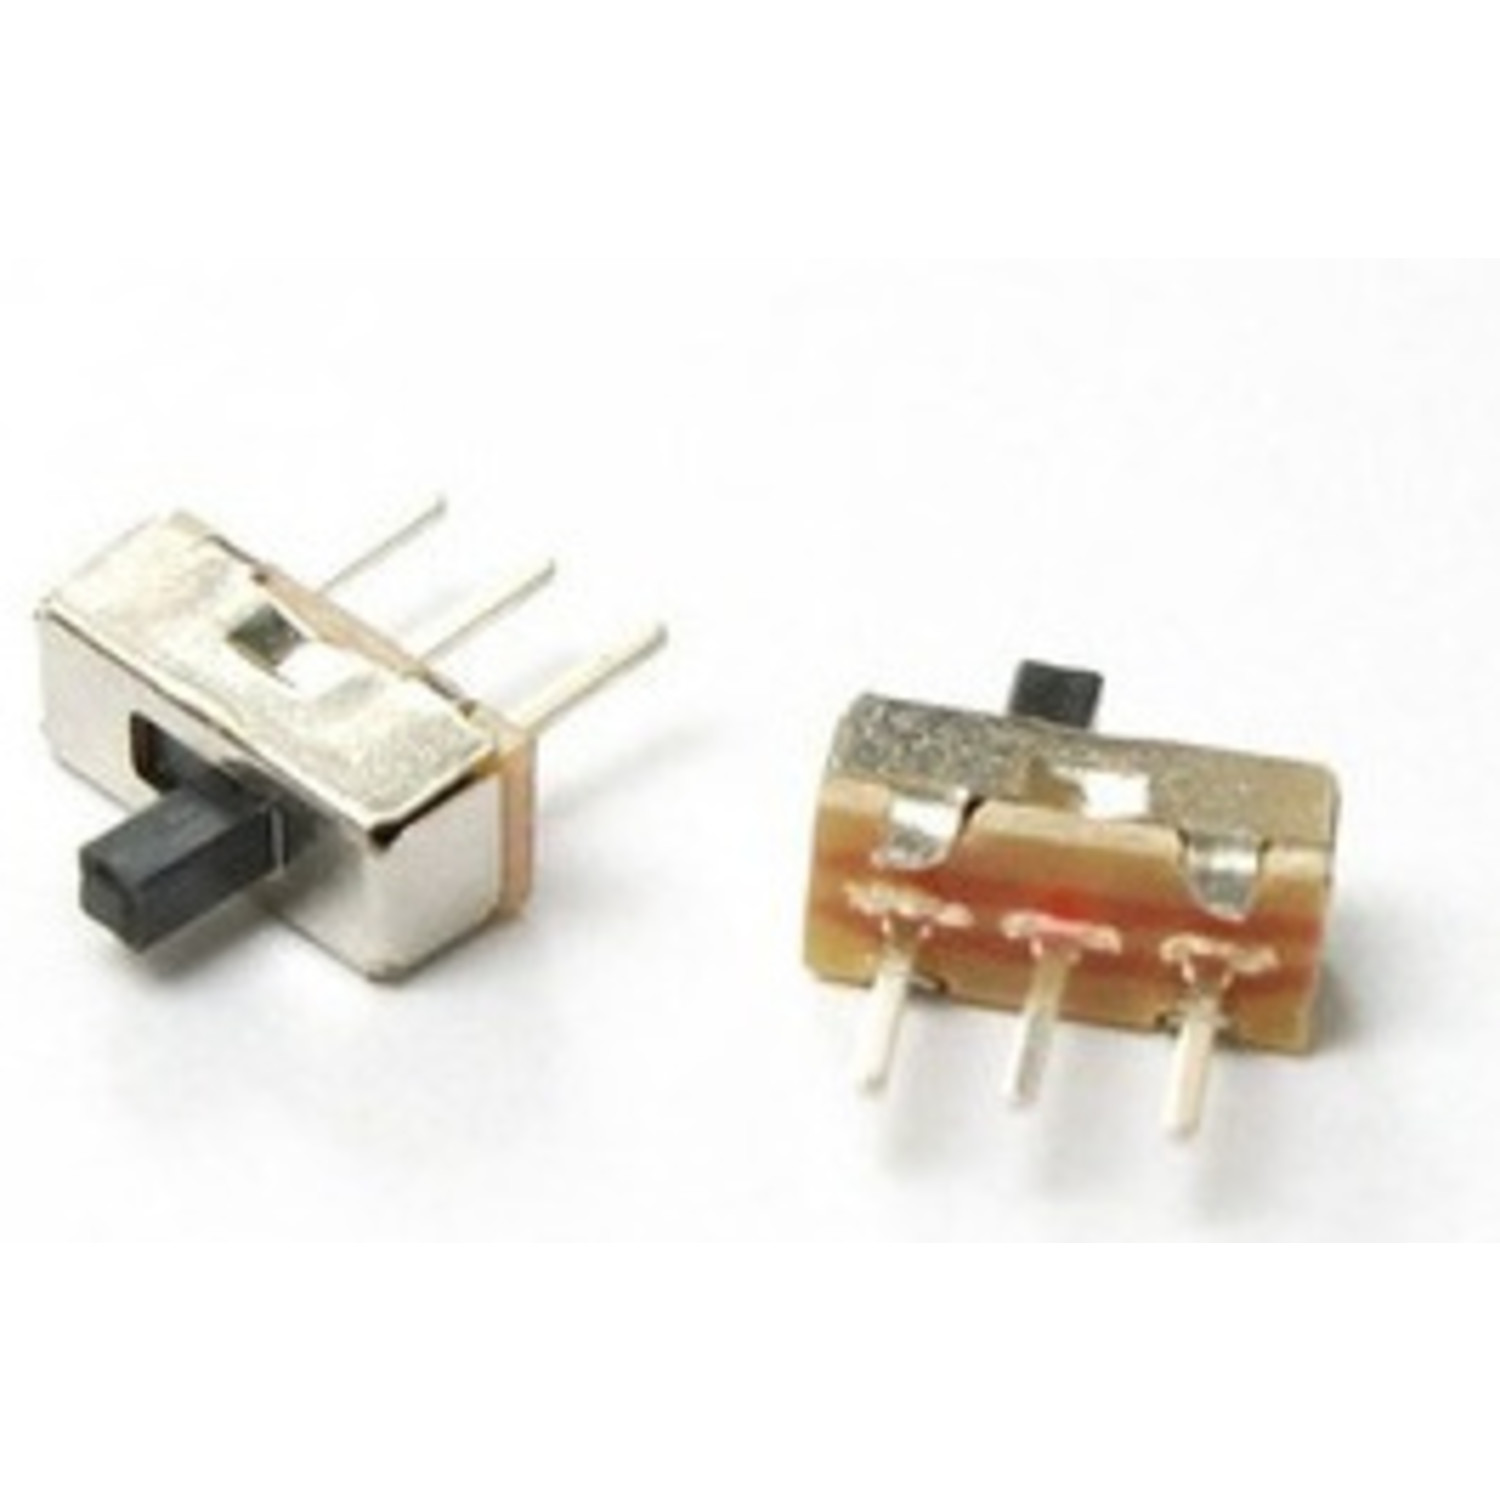 Msk12c01 Interrupteur à glissière horizontale 3 broches CMS Micro